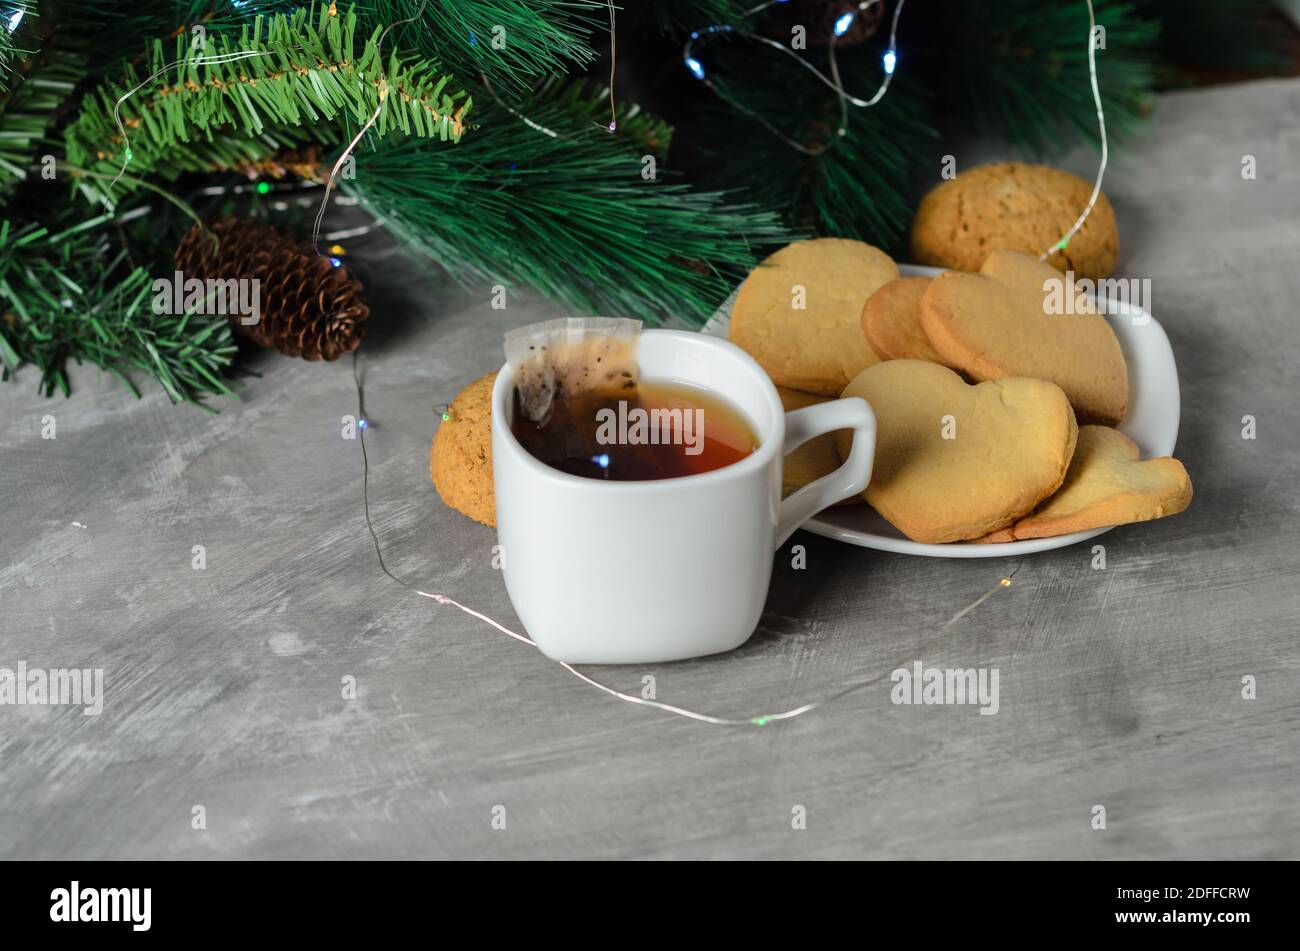 Hausgemachte Kekse in Form eines Herzens auf einem weißen Teller mit einem Becher und einem Teebeutel auf dem Hintergrund der Weihnachtsdekoration. Selektiver Fokus. Stockfoto